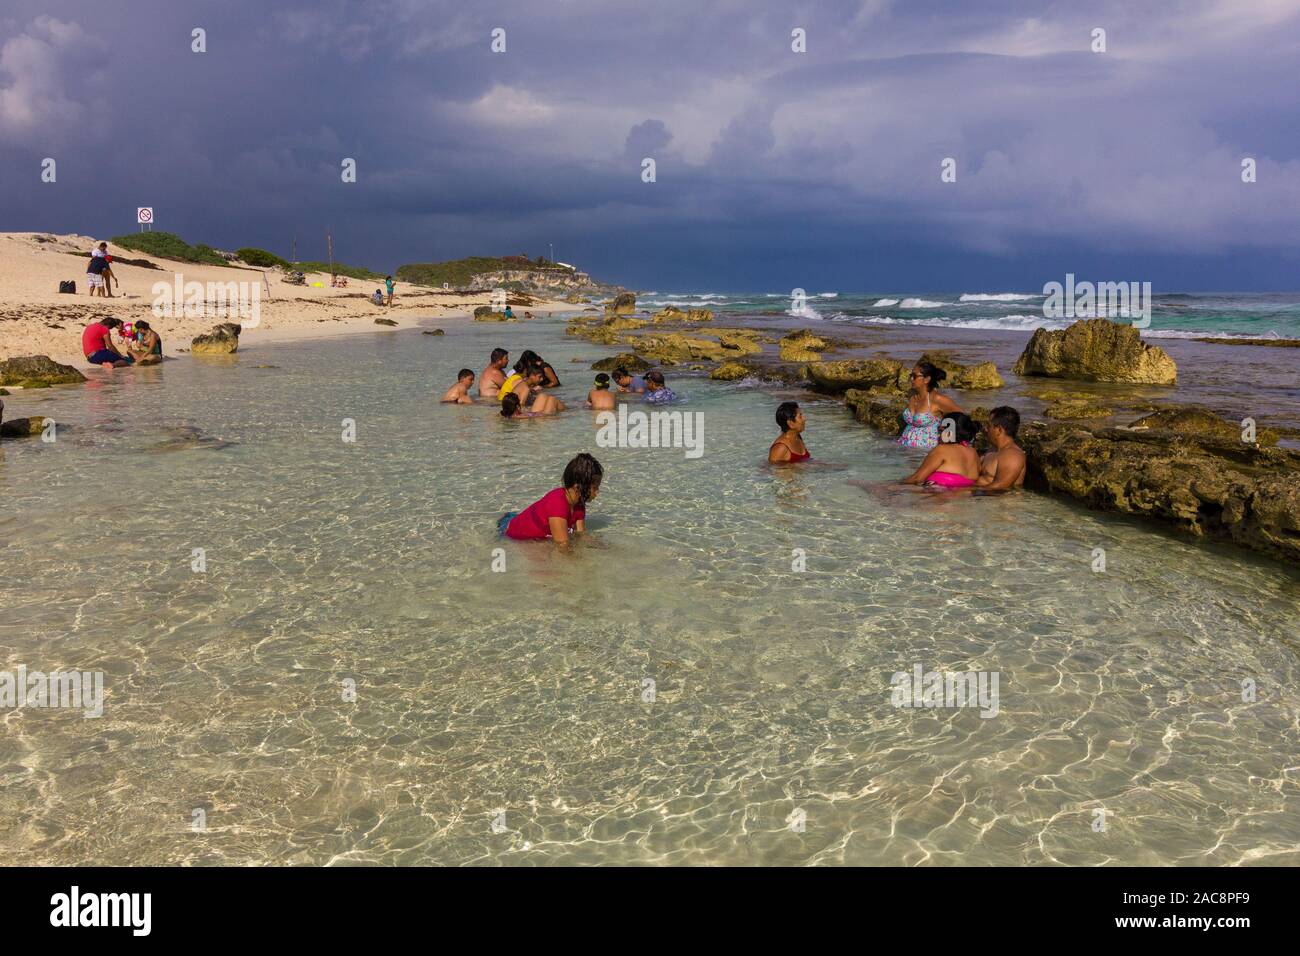 La soleada playa con aguas cristalinas en Cozumel, Quintana Roo México Foto de stock